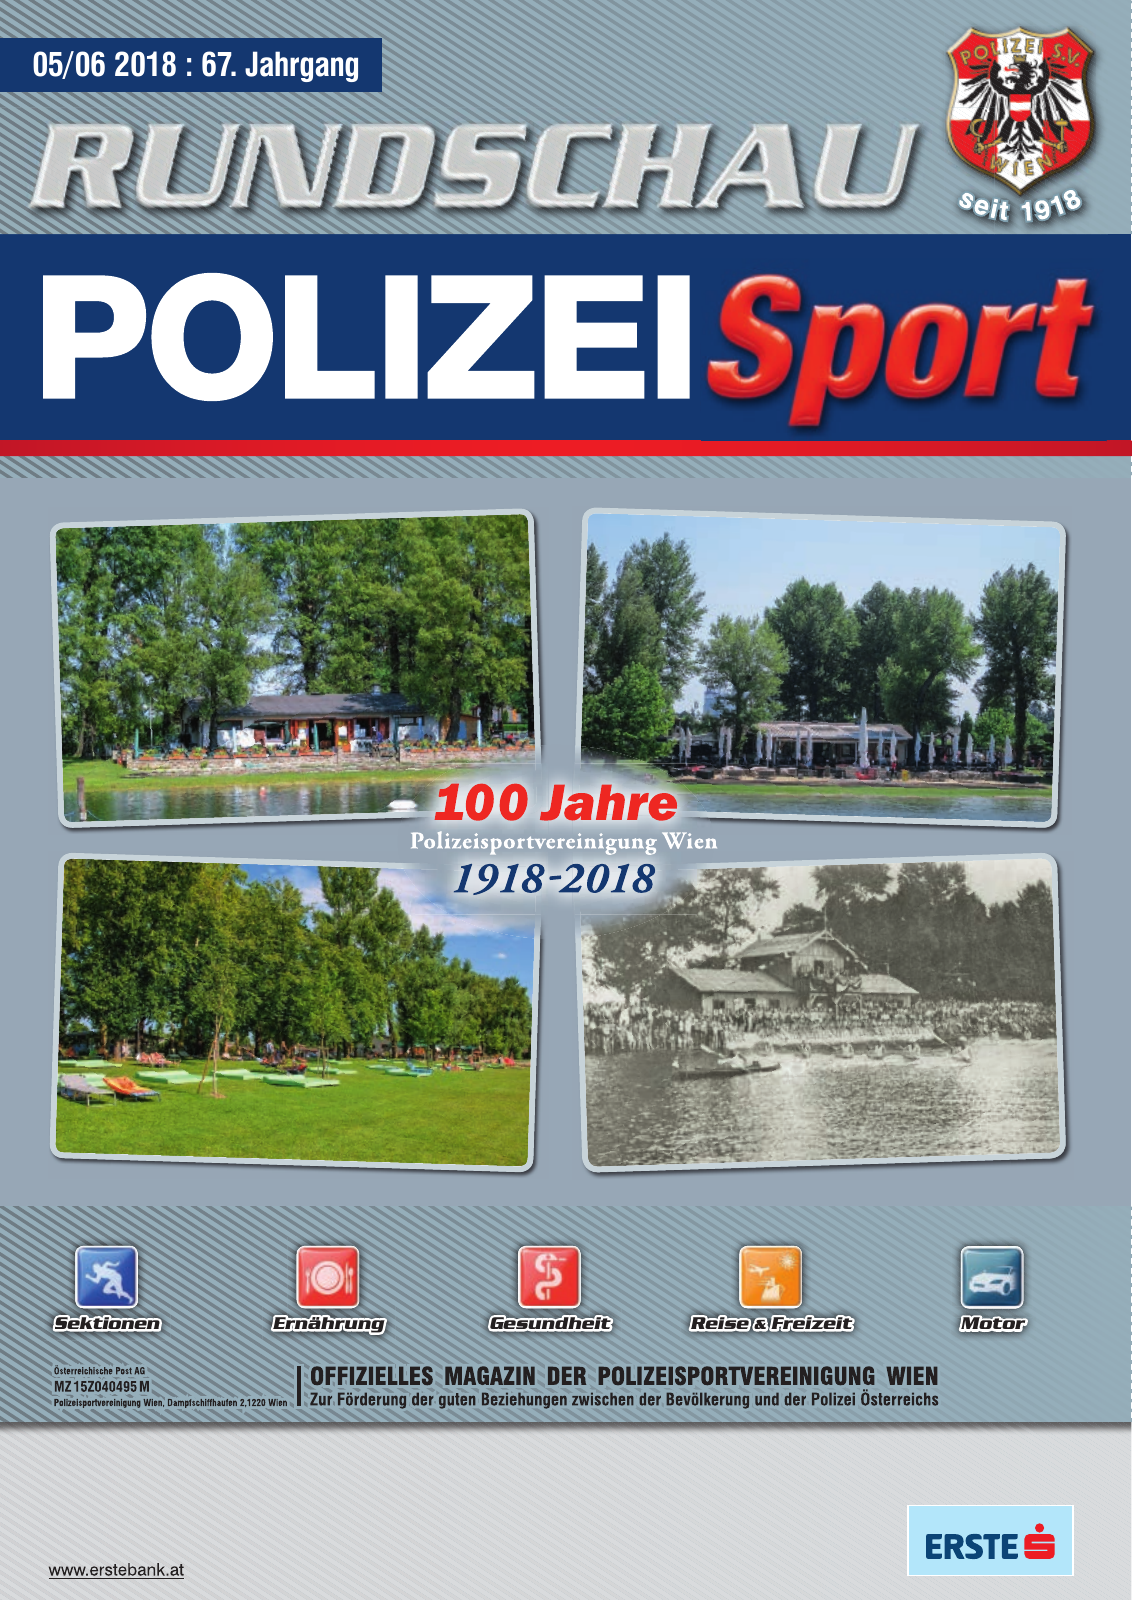 Vorschau Rundschau Polizei Sport 05-06/2018 Seite 1